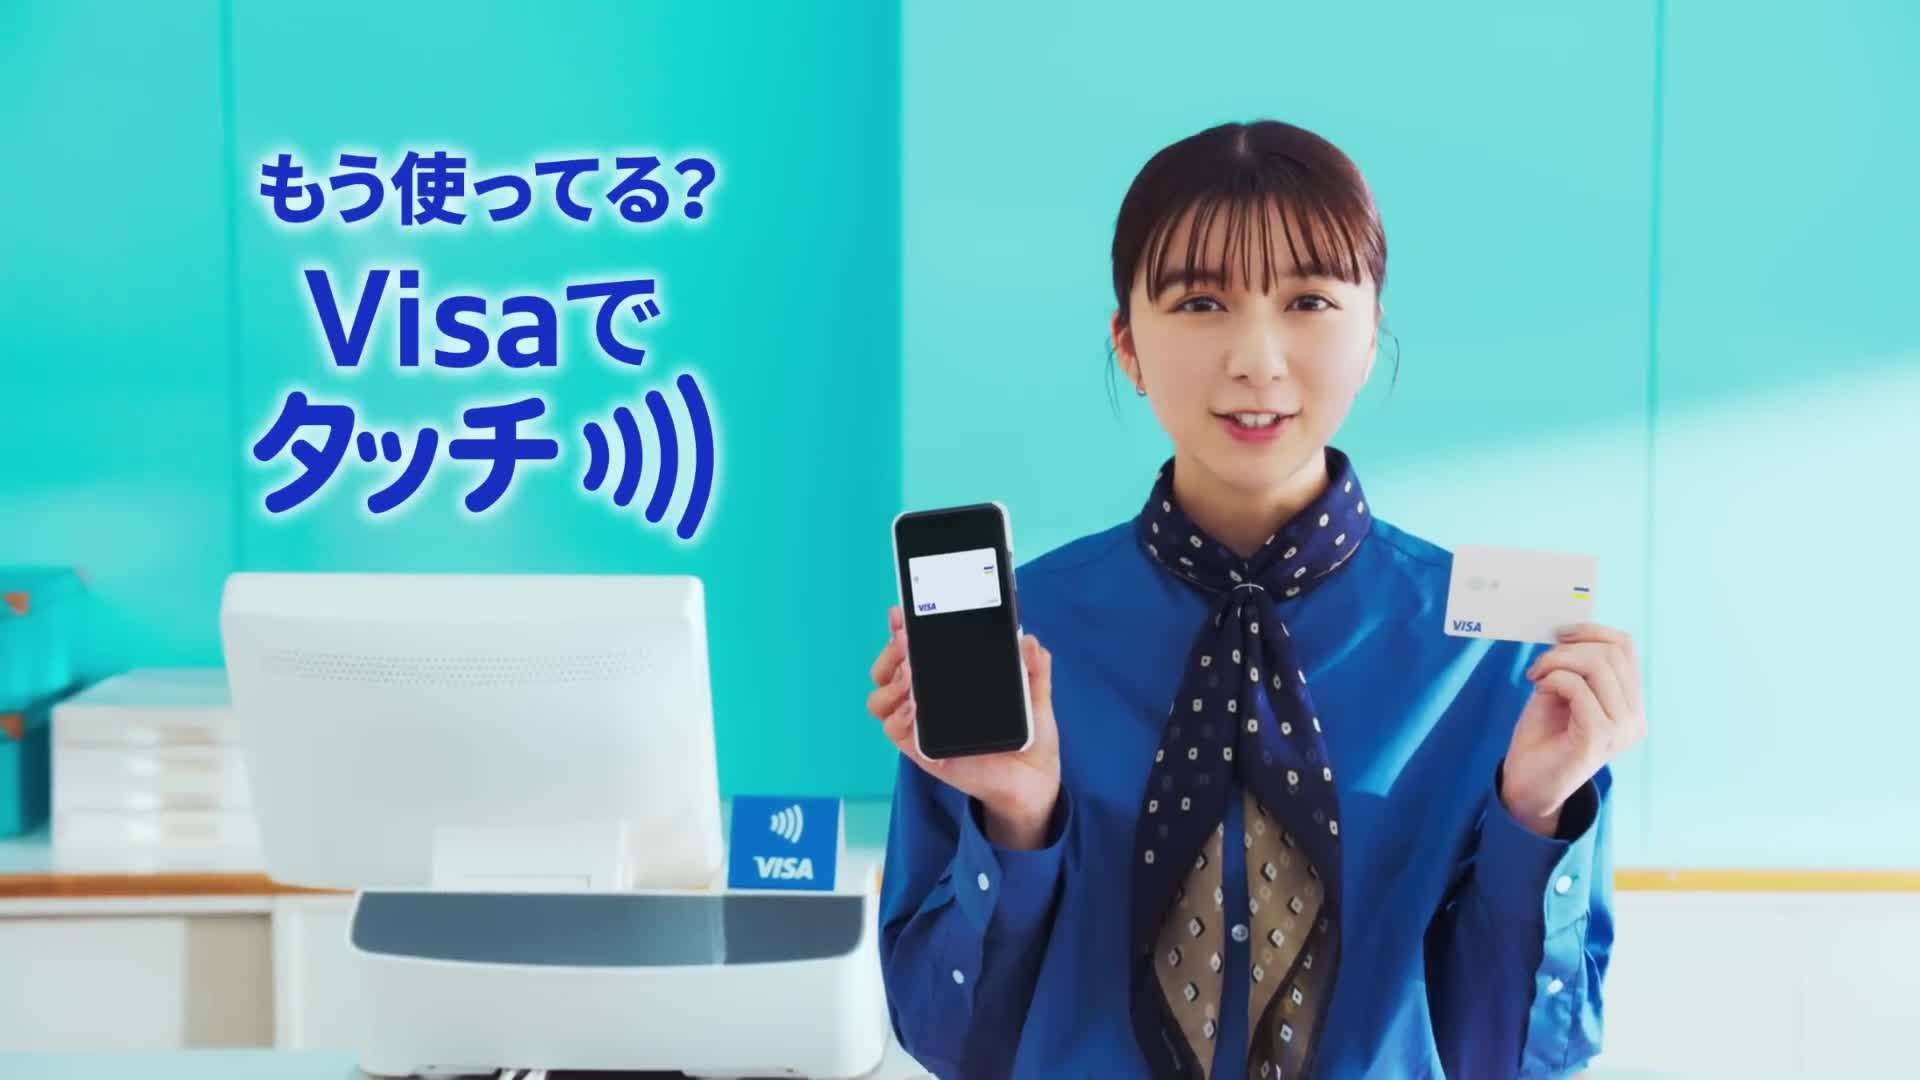 日本 Visa 简易广告 电车广告